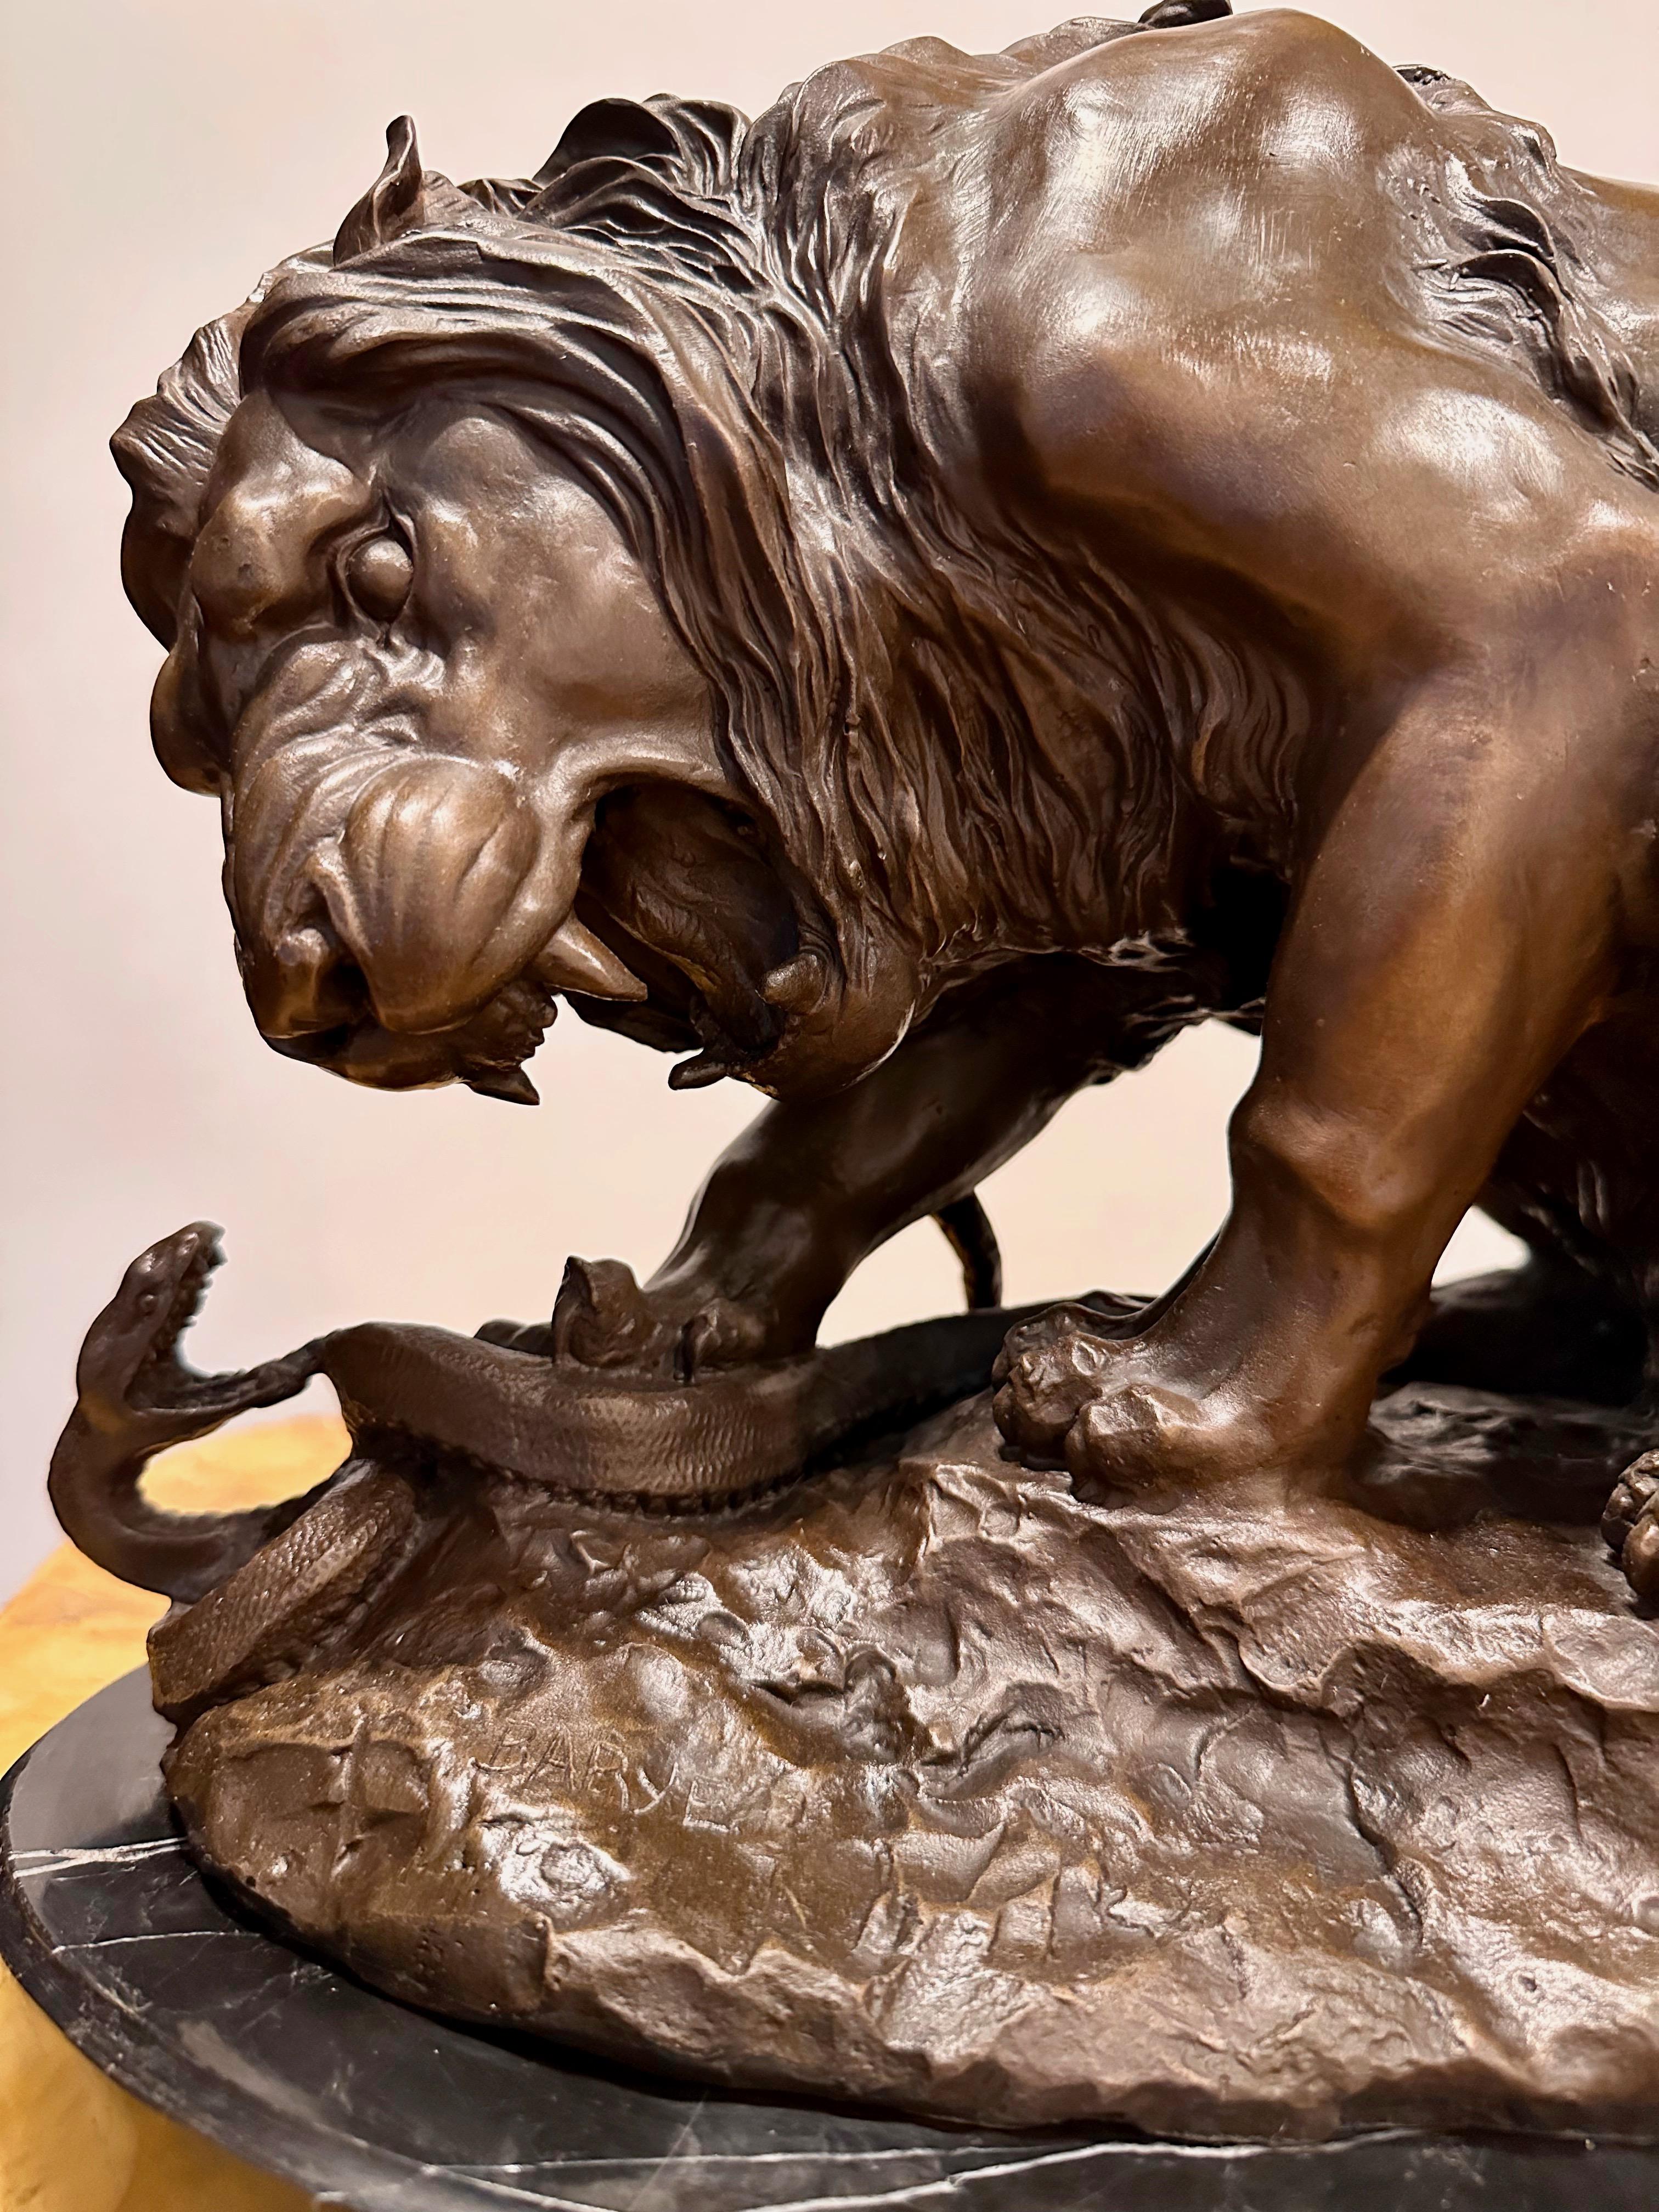 Antoine-Louis Barye (Paris, 1795-1875). Ein Löwe zerquetscht eine Schlange. Bronze mit brauner Patina, signiert Barye auf der linken Seite des Sockels. Die Bronzeskulptur steht auf einem schwarzen Marmorsockel.

Diese spektakuläre Bronze, die den